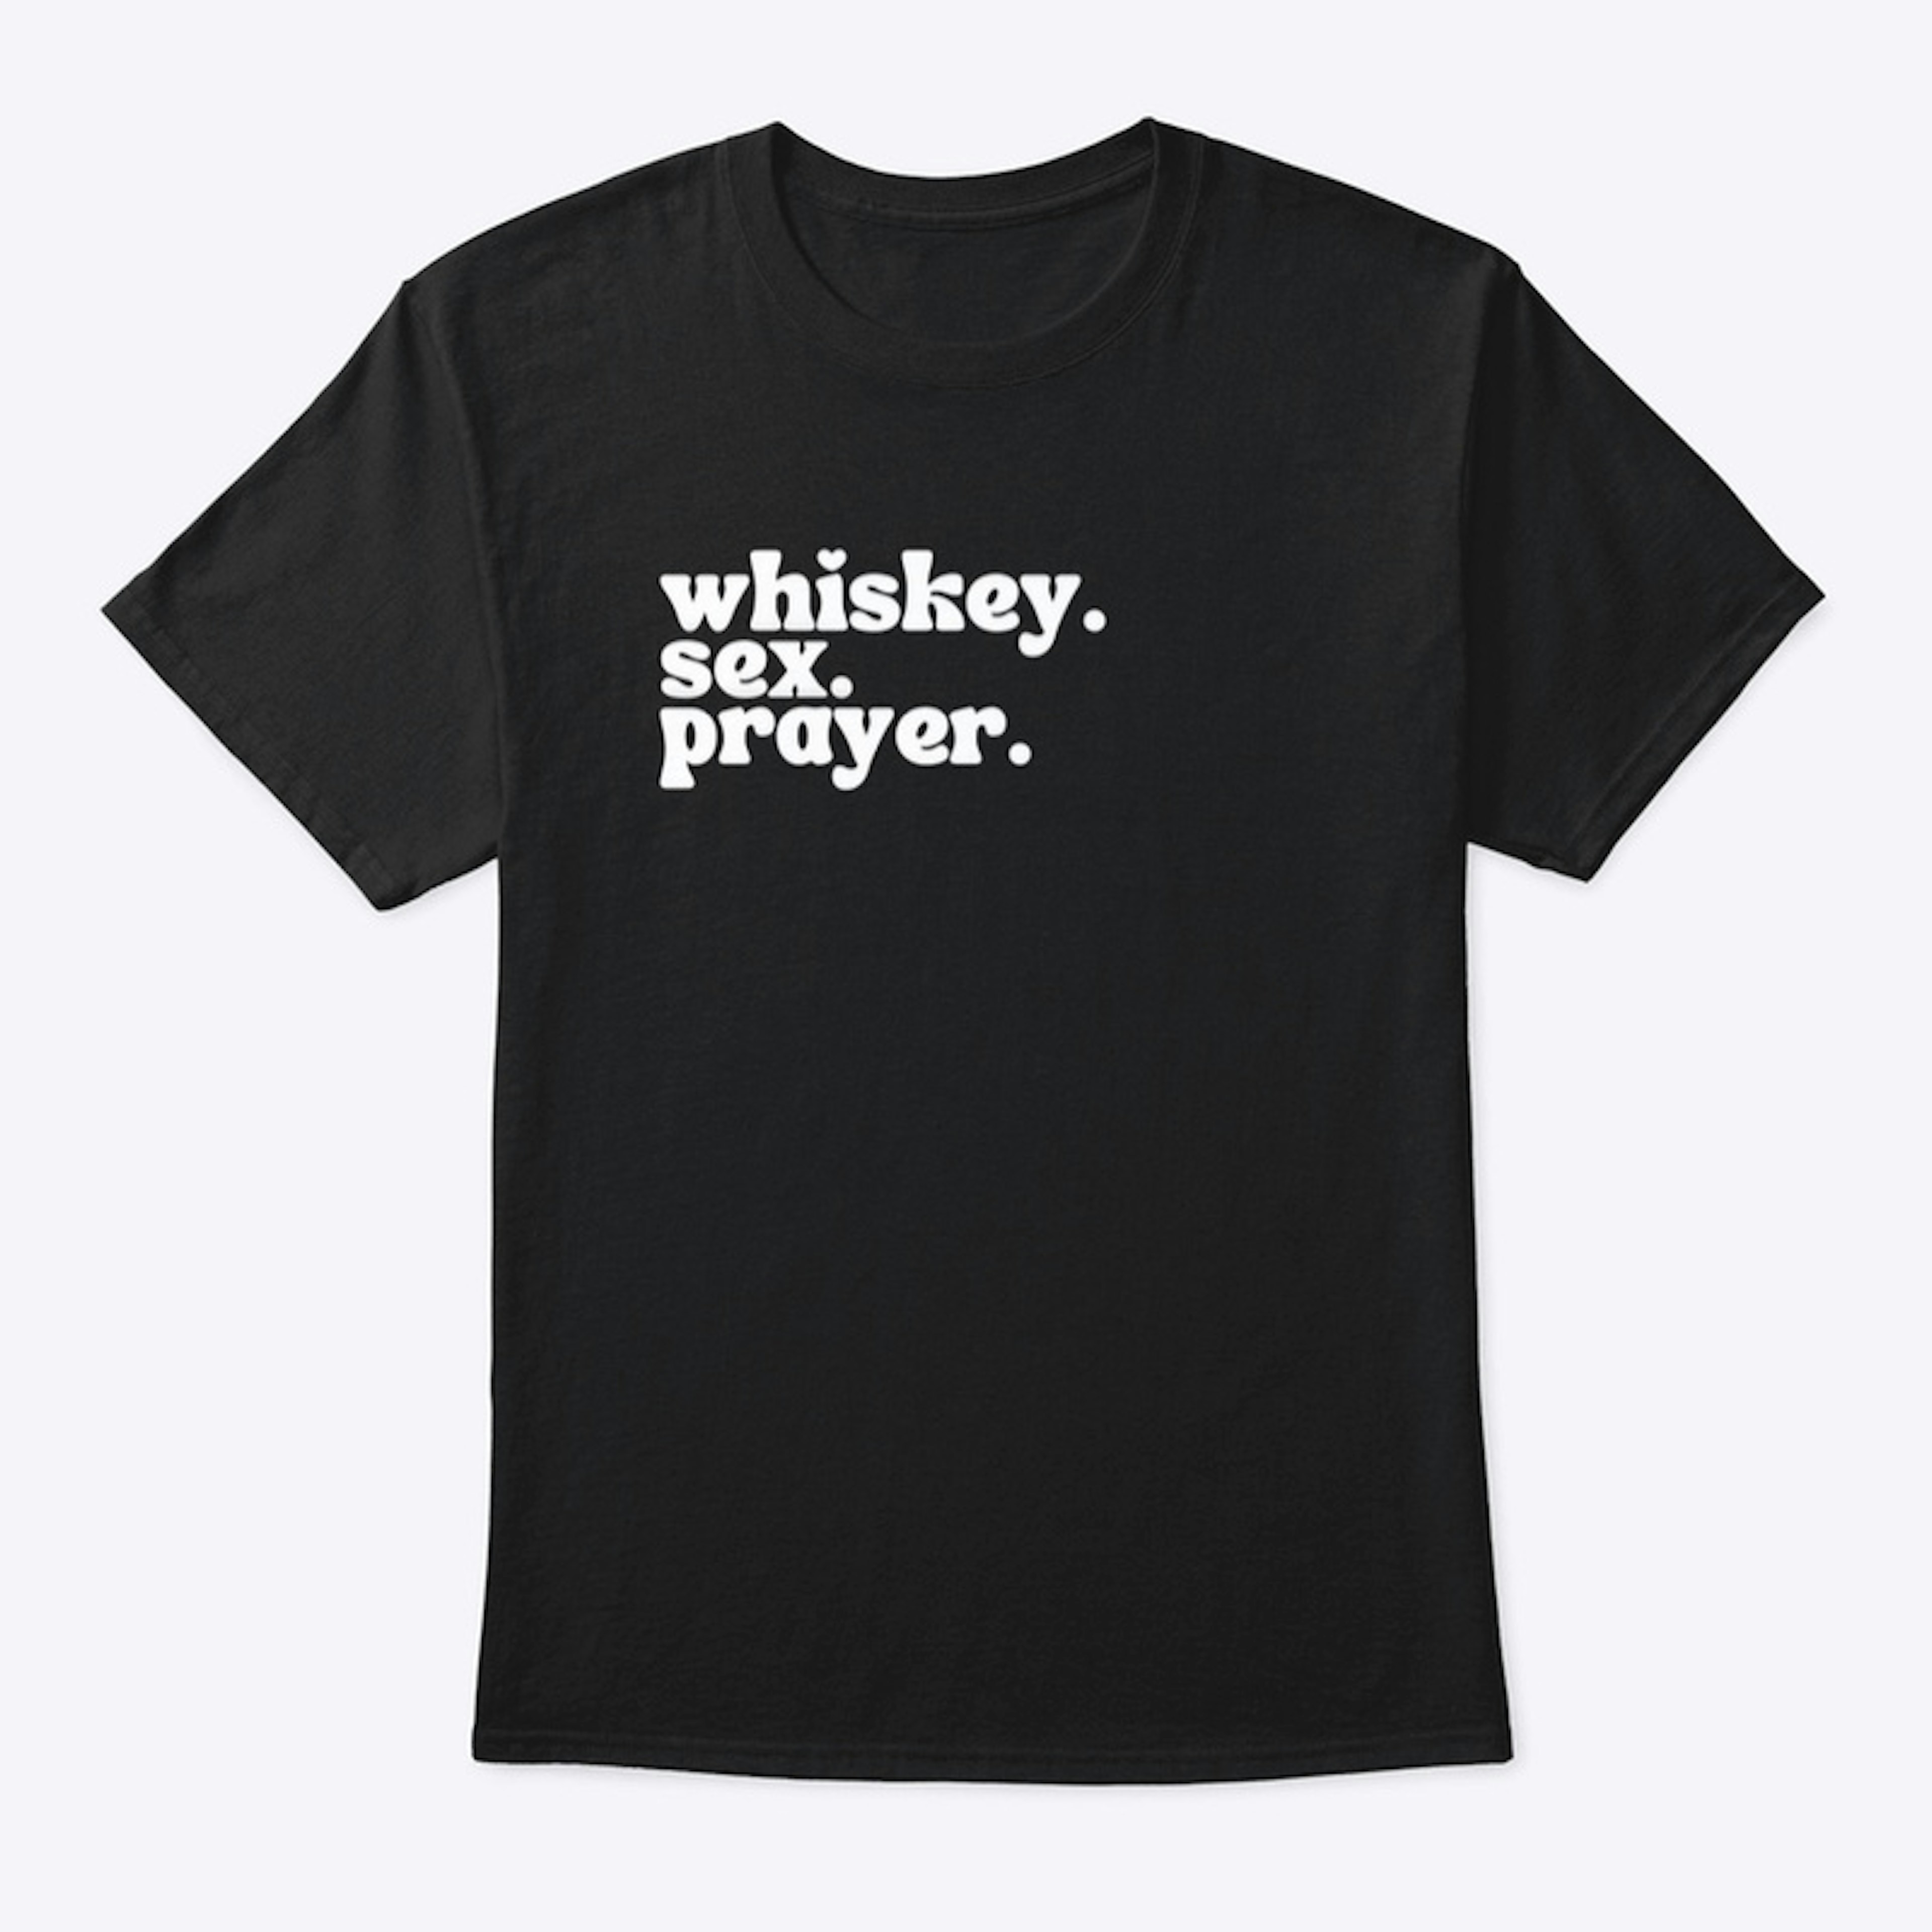 Whiskey. Sex. Prayer. 